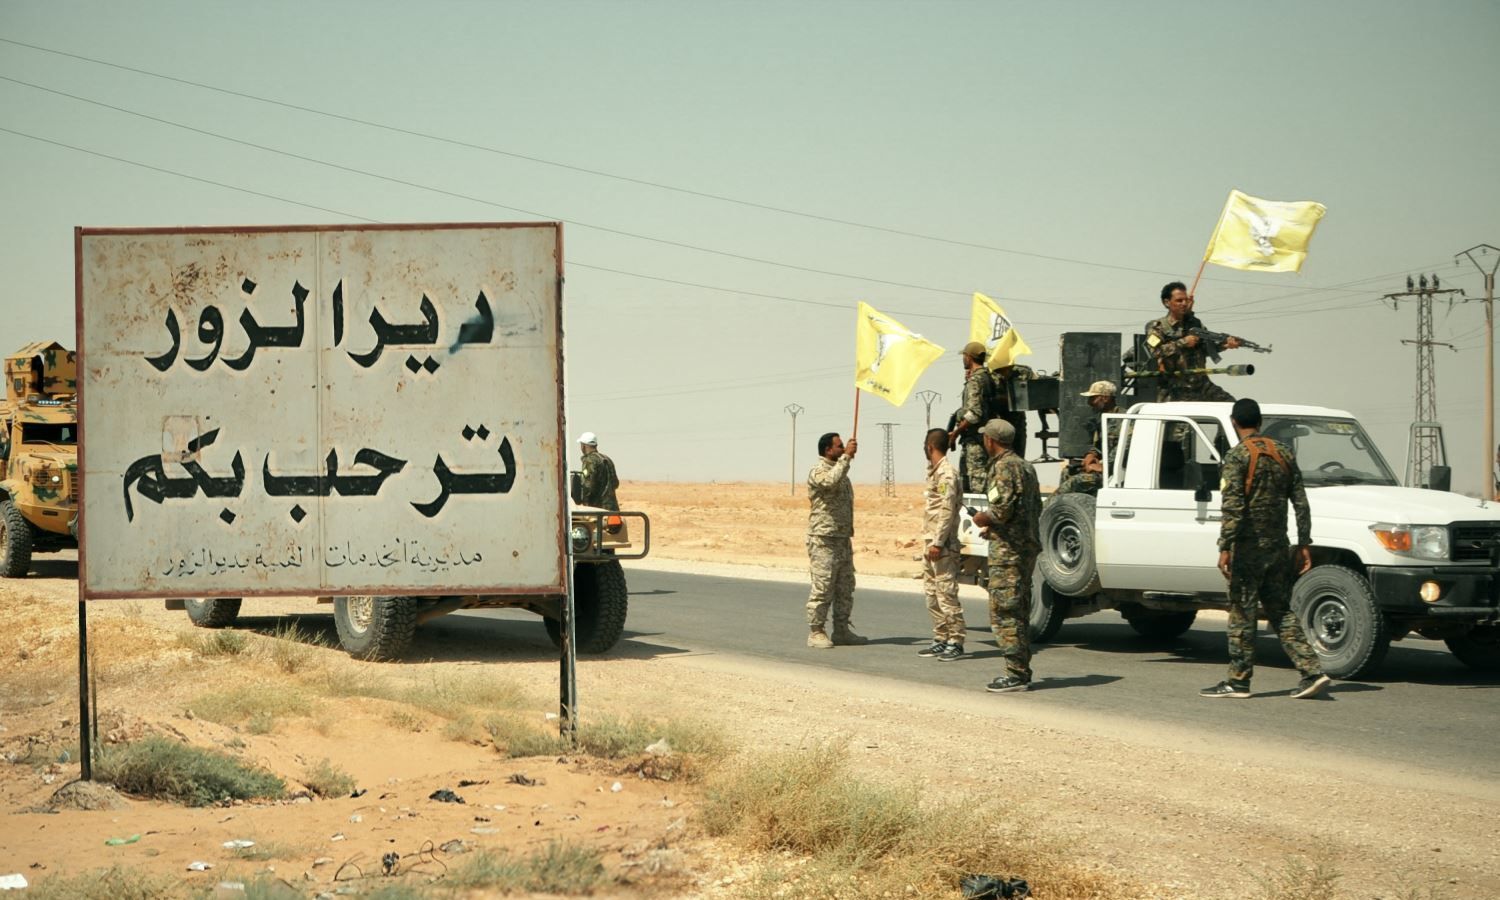 مقاتلين من "قسد" على مدخل مدينة دير الزور شرقي سوريا (روداو)